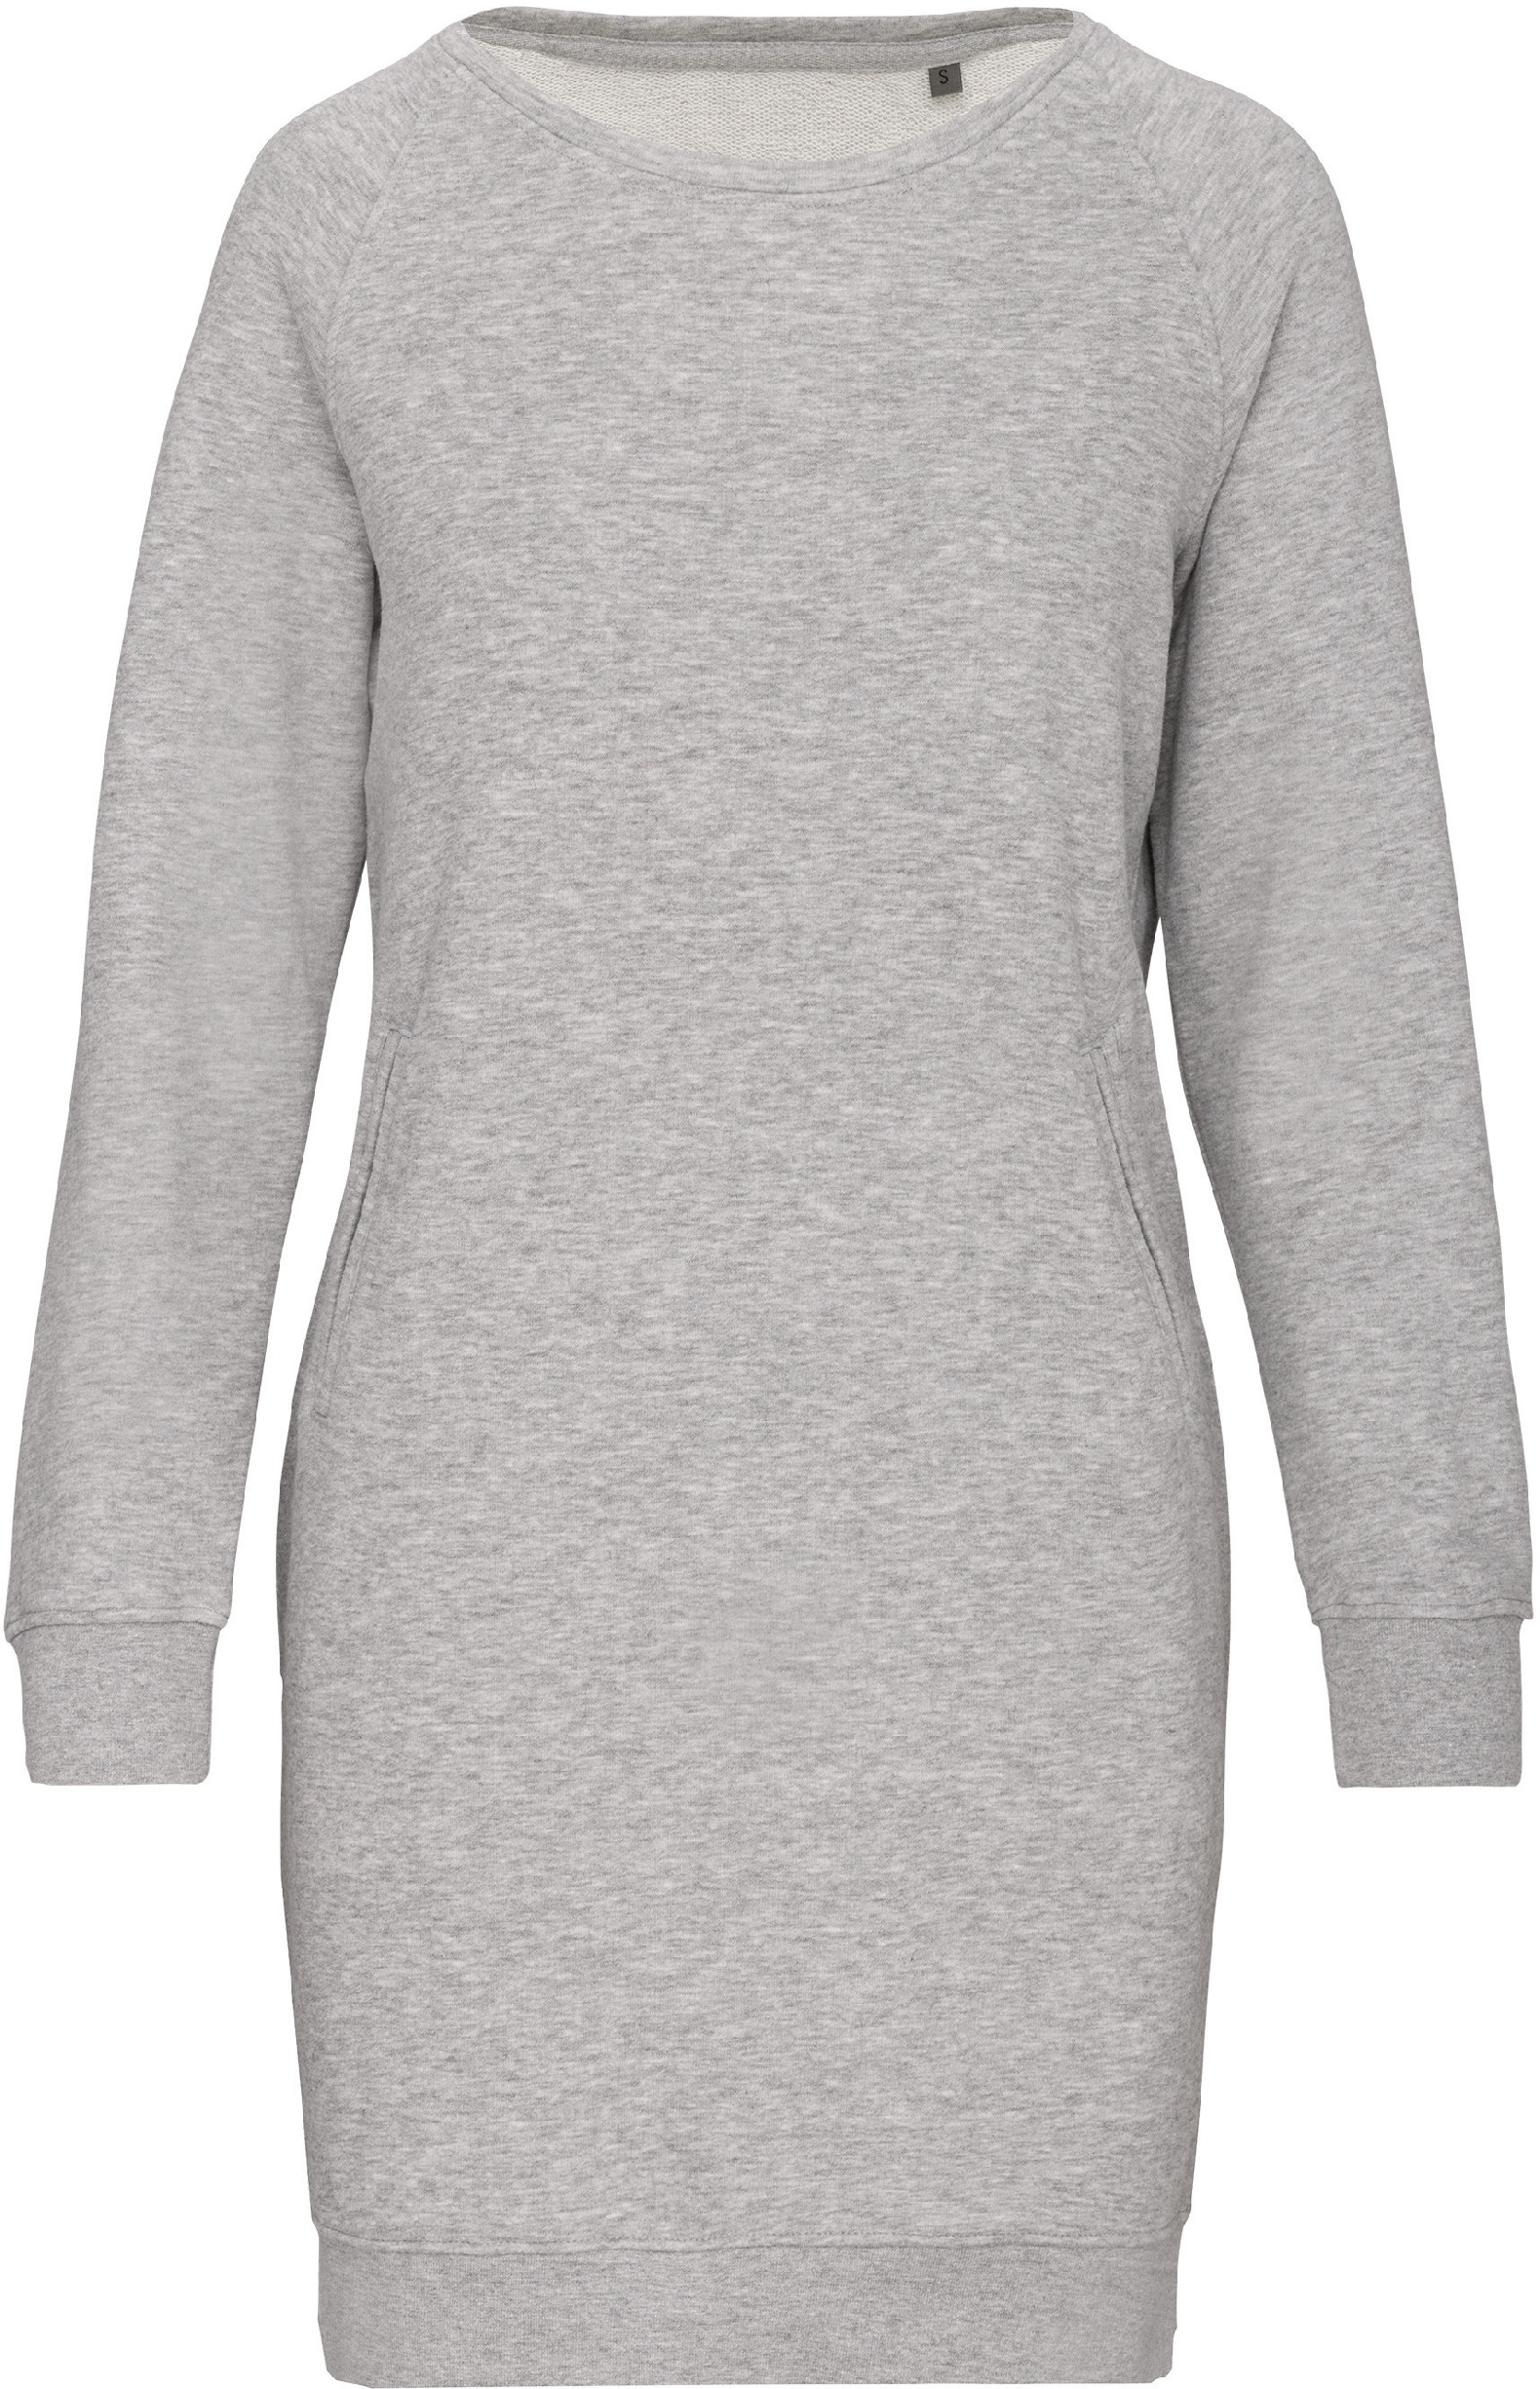 Dámské mikinové šaty K493 Barva: světle šedý melír, Velikost: M